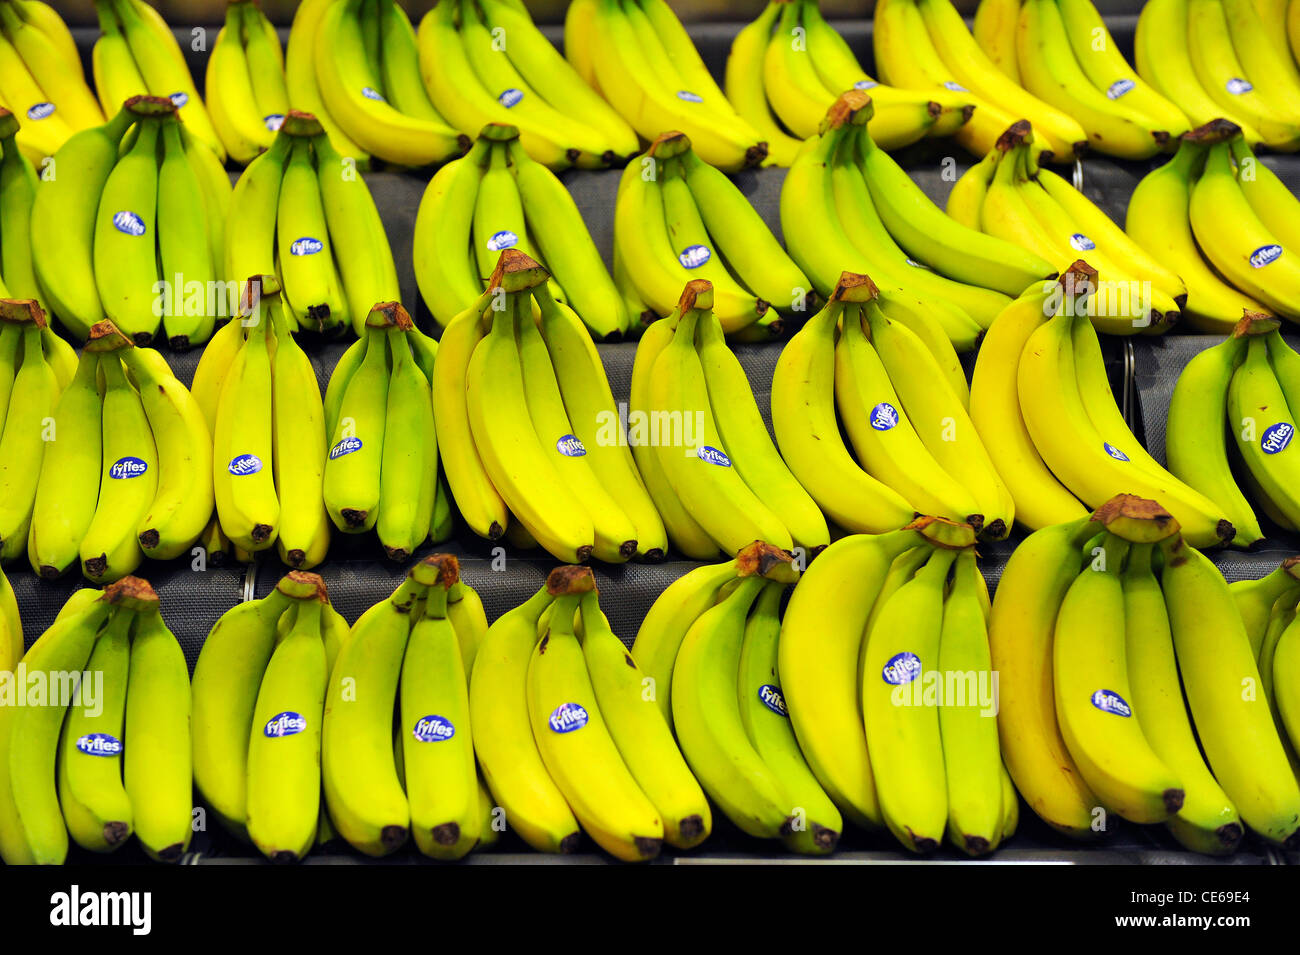 Vista ravvicinata delle banane gialle sul display in un supermercato. Foto Stock